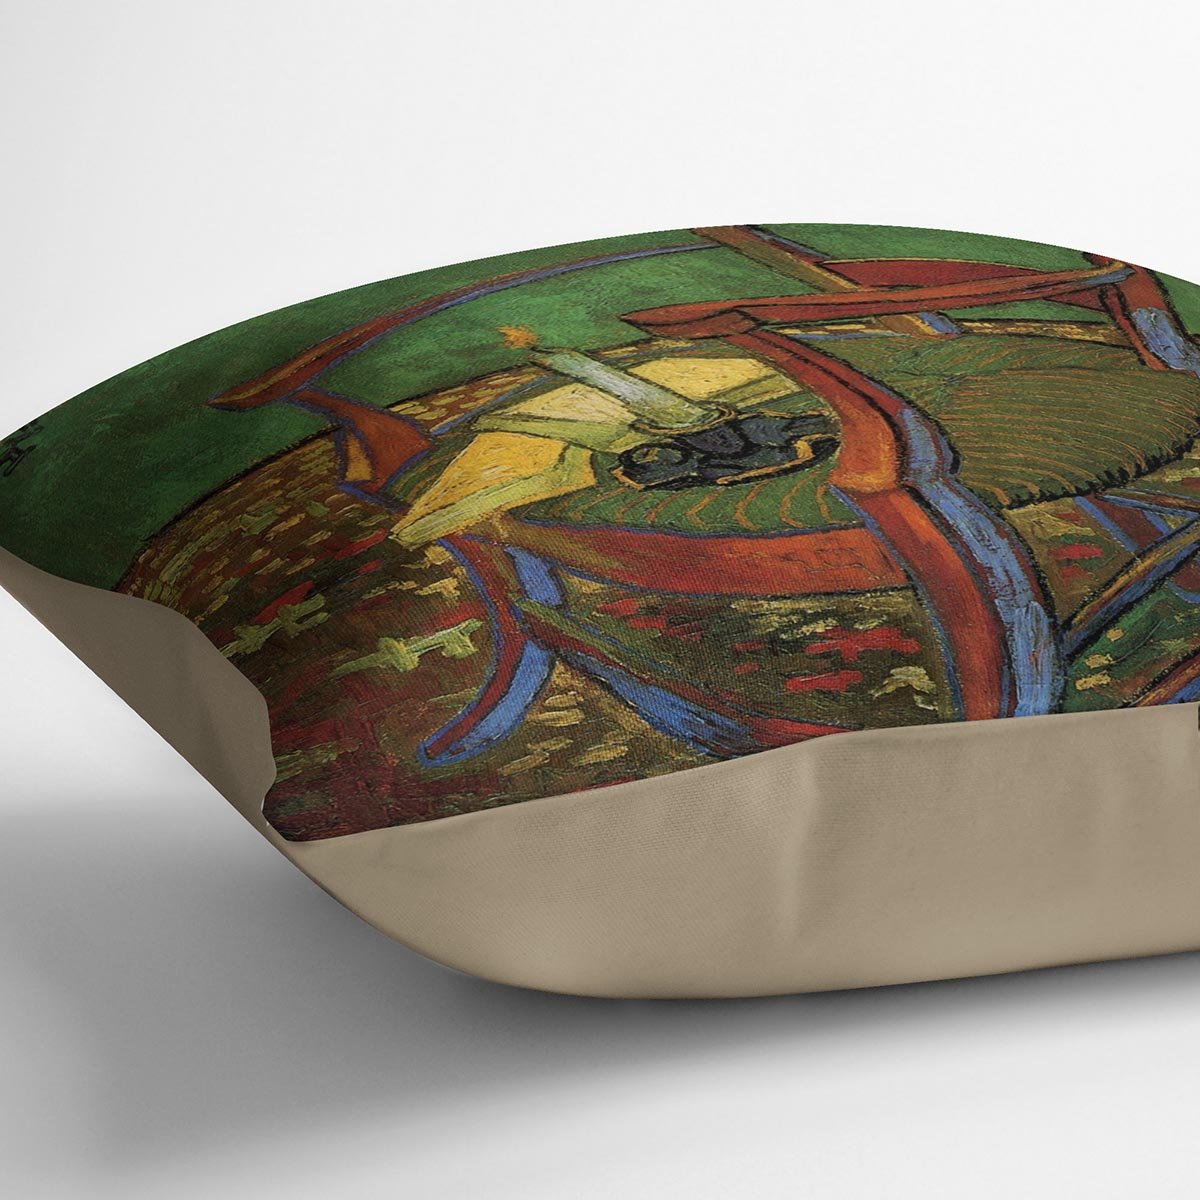 Paul Gauguin's Armchair by Van Gogh Throw Pillow